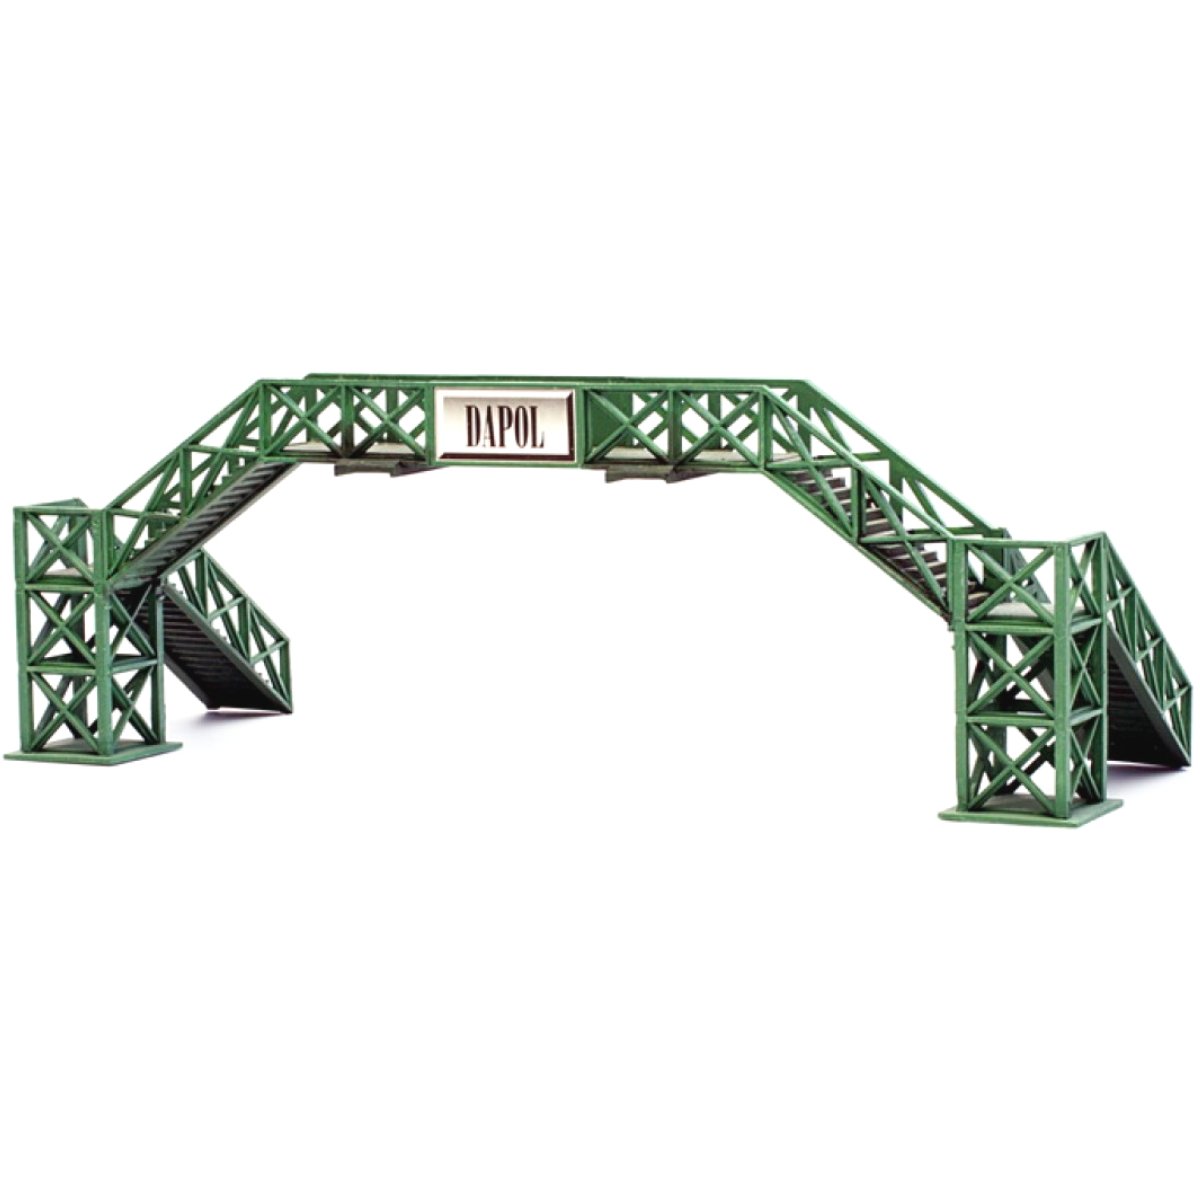 Dapol C004 Platform/Trackside Footbridge - OO Gauge Plastic Kit